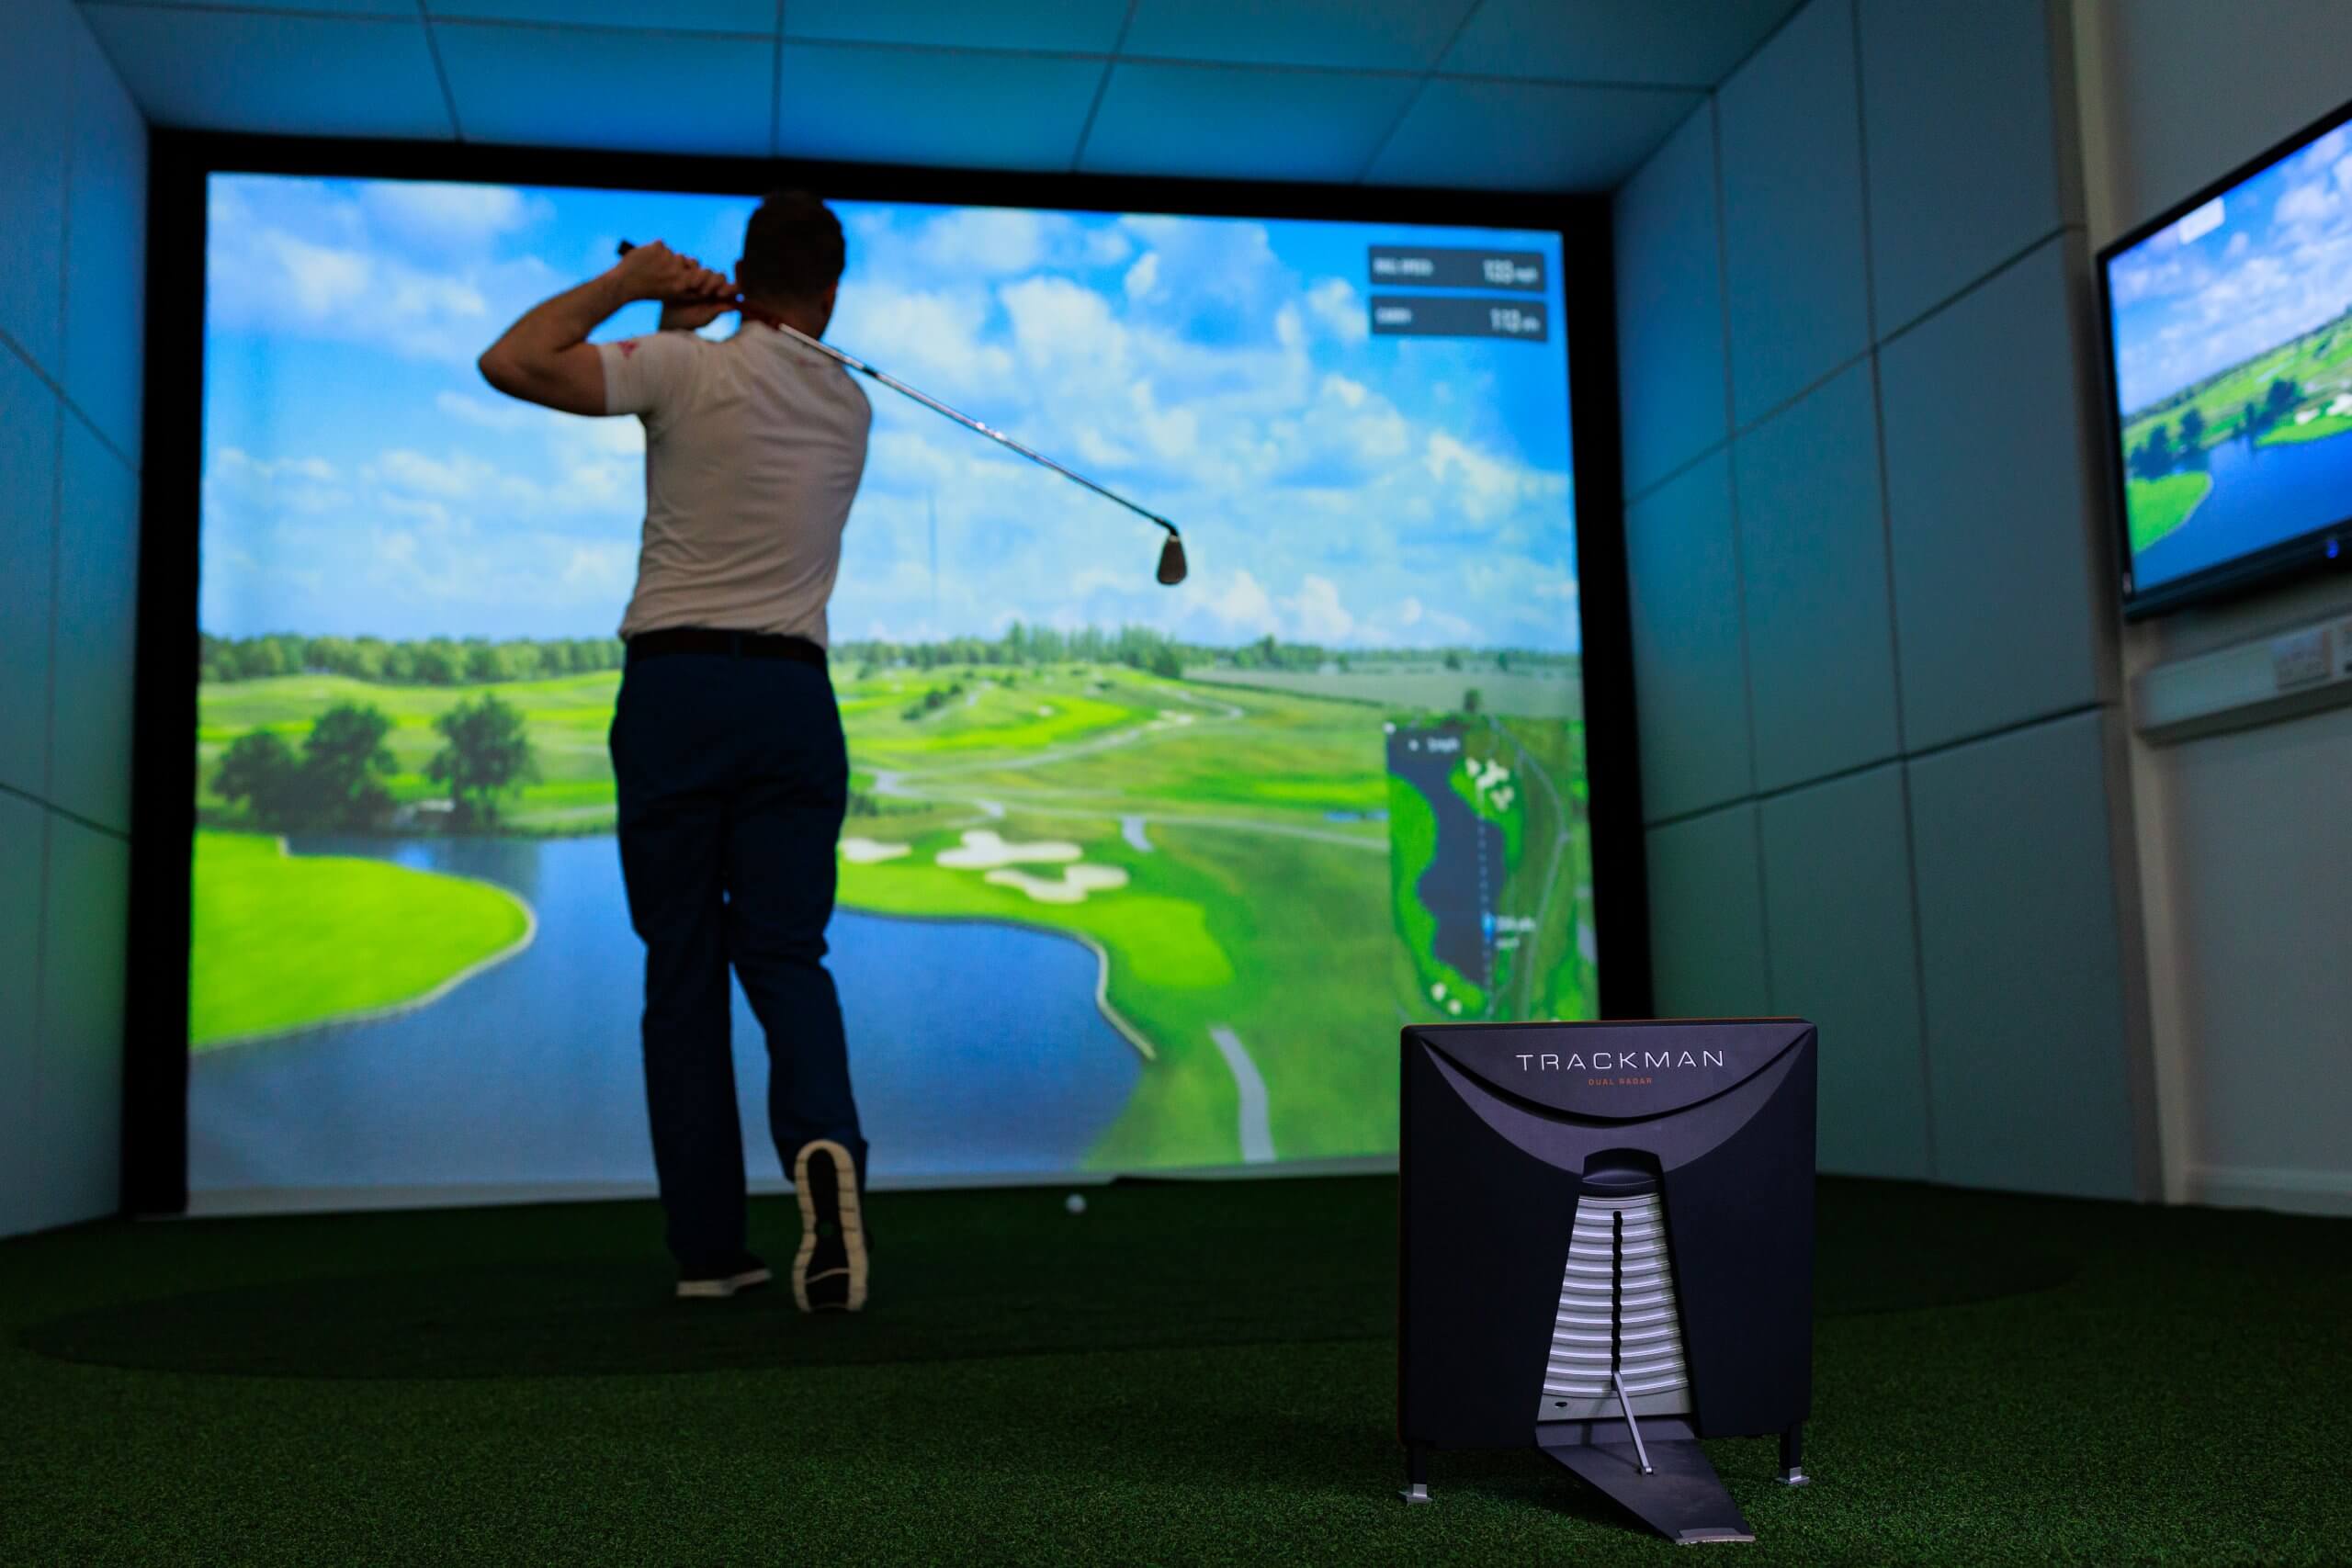 Home Golf Simulators - Golf Pro Delivered